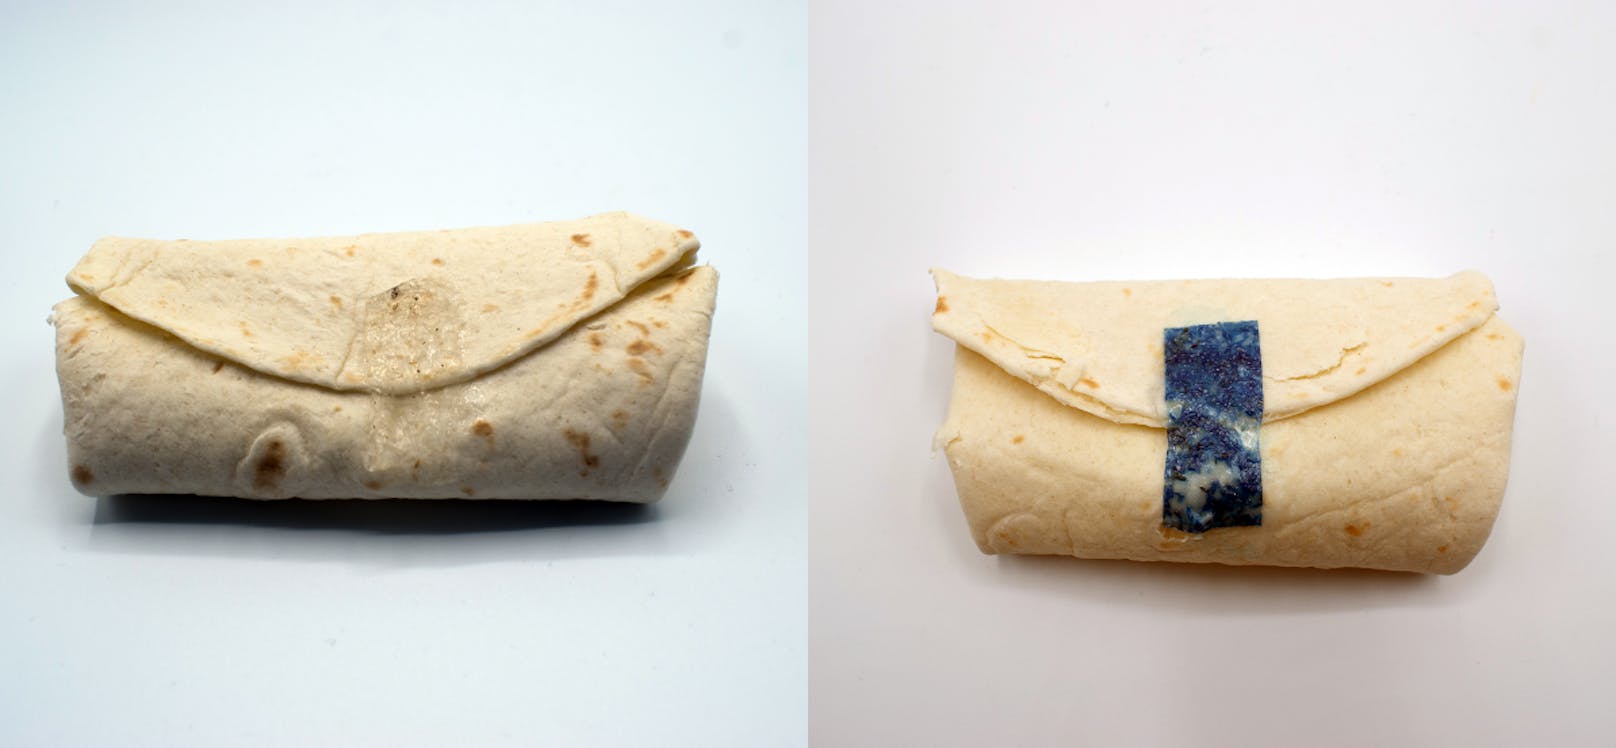 "Tastee Tape" ist ein durchsichtiges, essbares Klebeband, das Wraps beim Essen geschlossen hält. Zur besseren Veranschaulichung wurde dem Band auf dem Bild rechts blauer Farbstoff hinzugefügt.